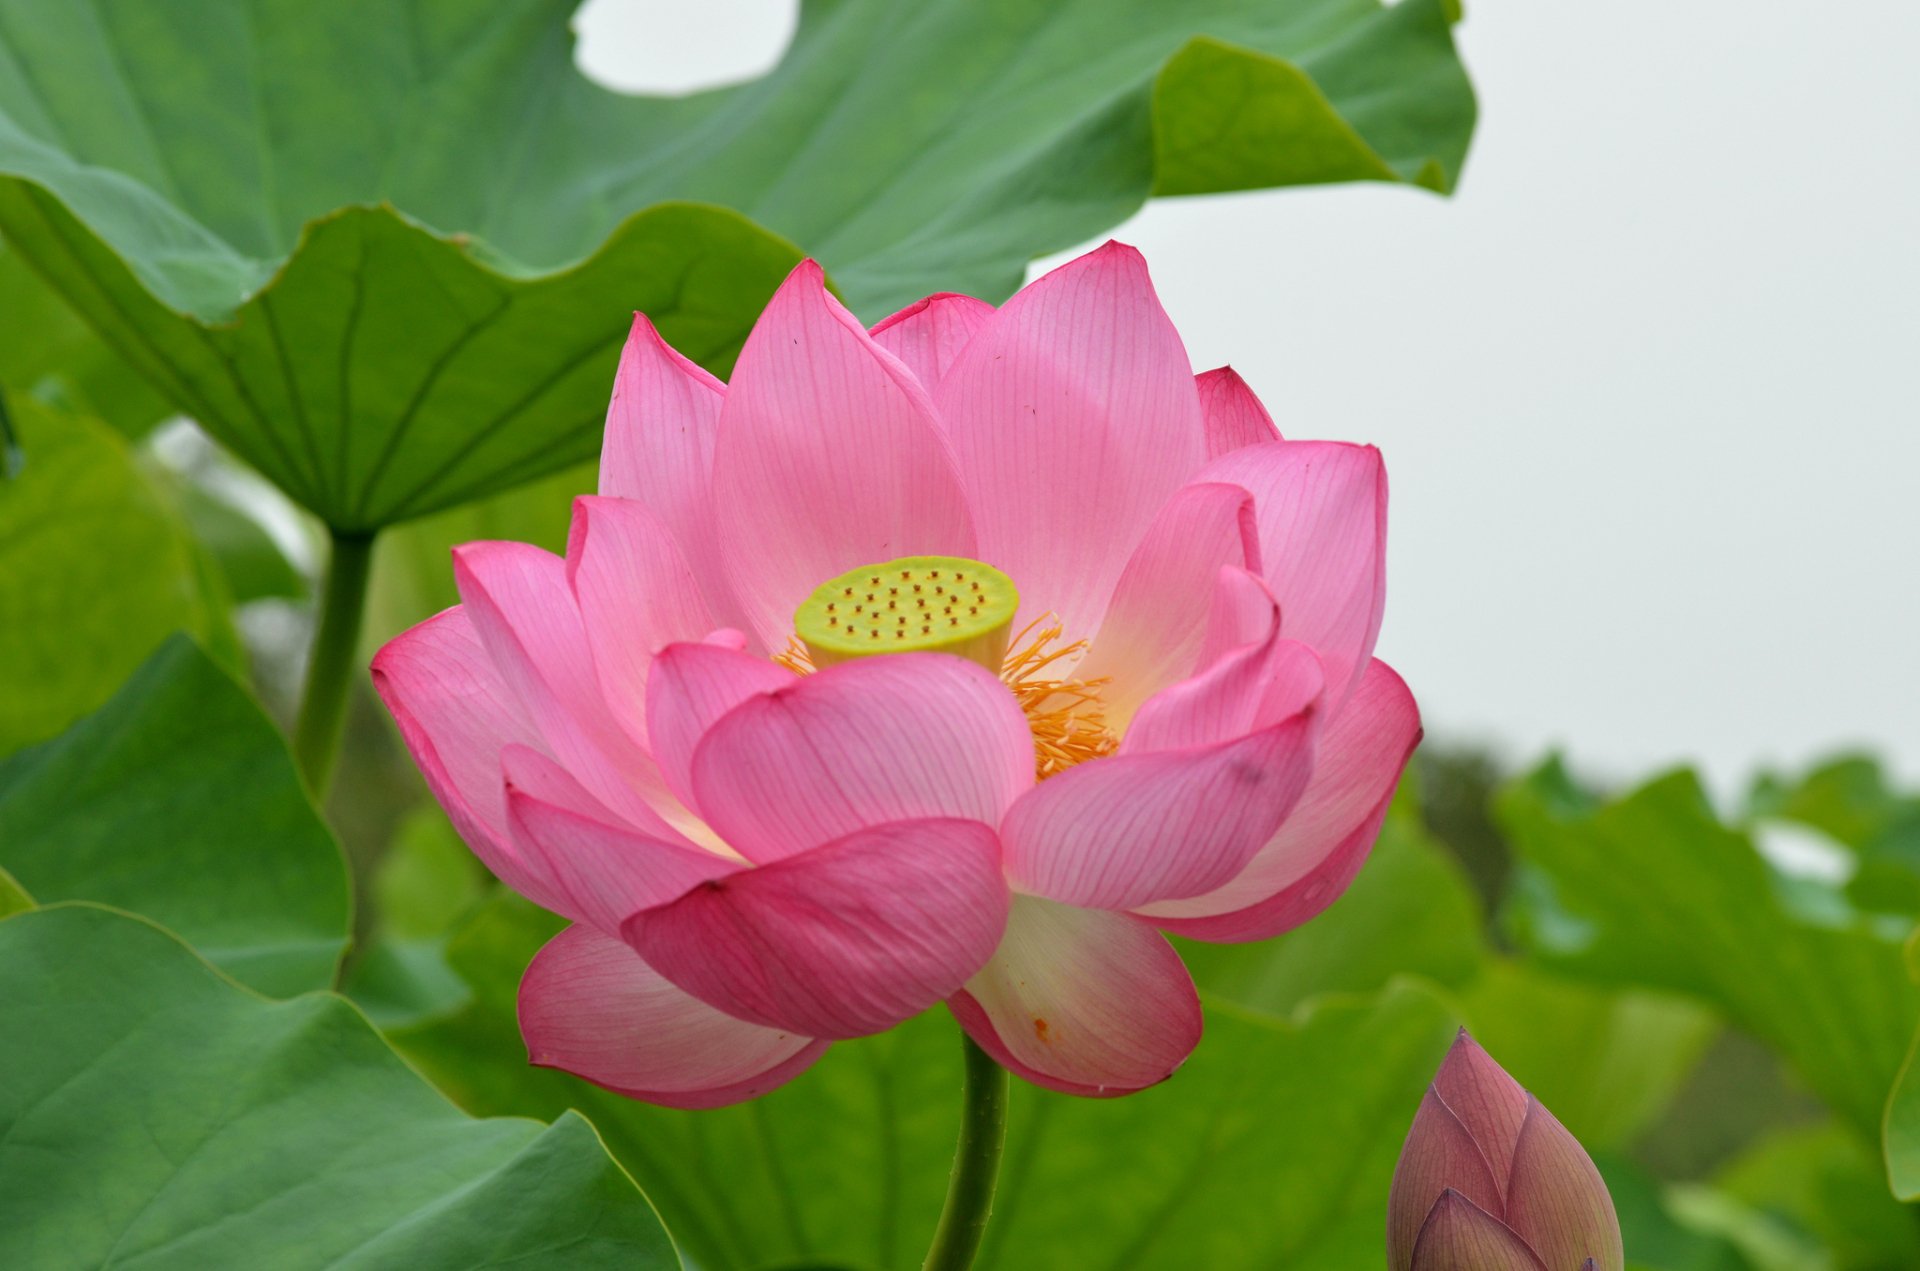 Lotus: Lotus - vẻ đẹp trân quý và đẳng cấp luôn khiến người ta say đắm. Ảnh về hoa sen này sẽ kiến bạn cảm thấy mãn nhãn với những chi tiết tinh tế và hình dáng độc đáo của loài hoa đặc biệt này.